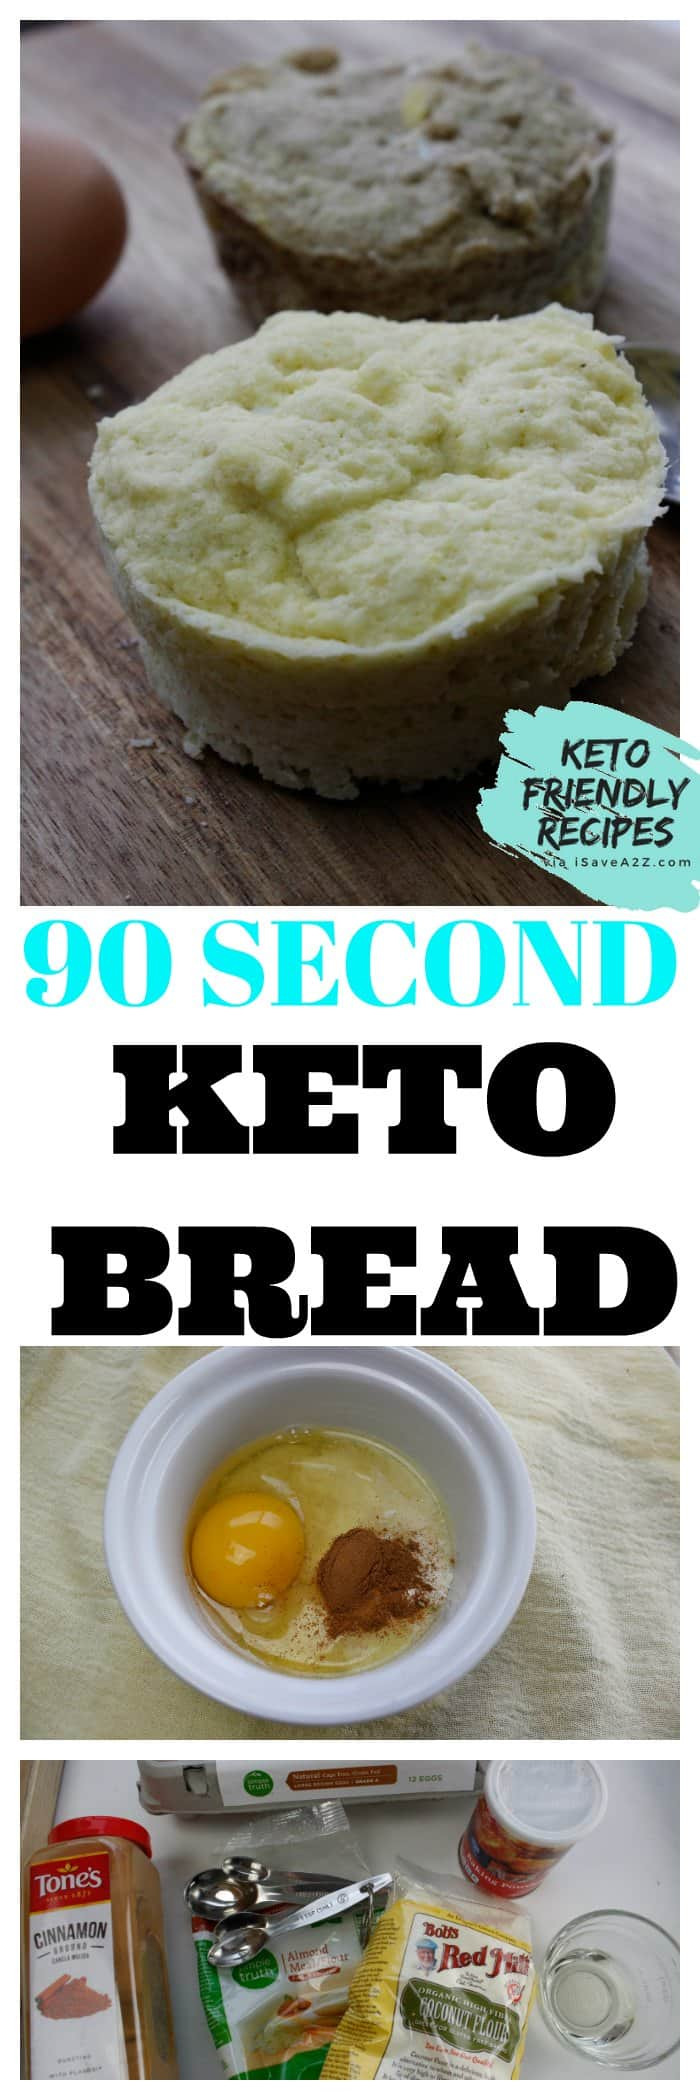 90 Second Keto Bread Dessert DELICIOUS Keto 90 Second Bread Recipe iSaveA2Z